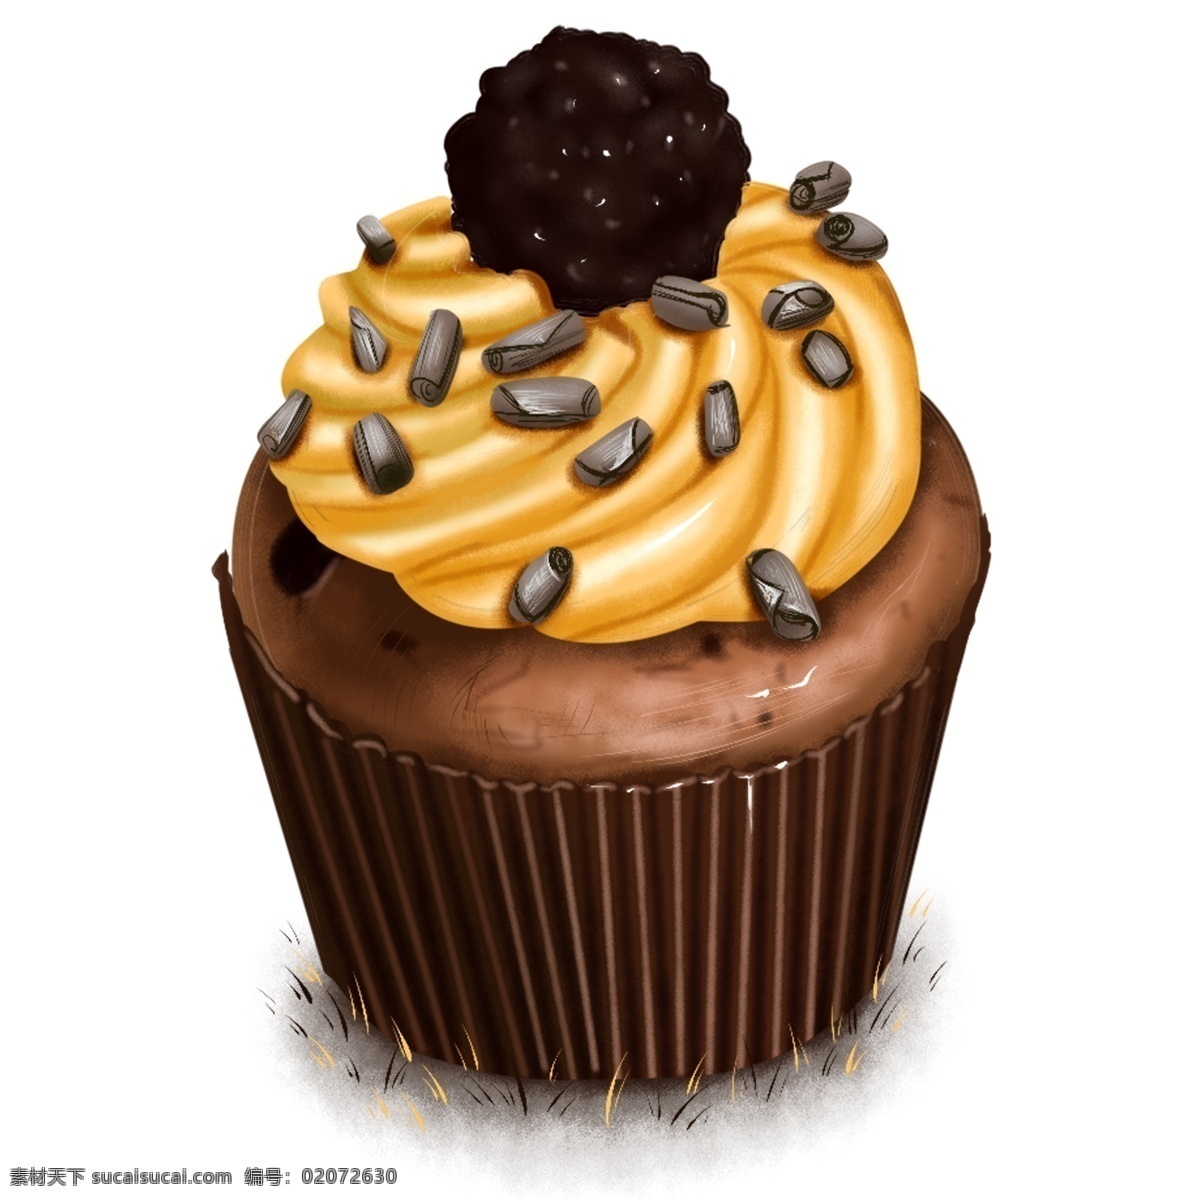 原创 手绘 食物 黄 奶油 巧克力 球 咖啡 杯子 蛋糕 元素 海报素材 商用 黄奶油 巧克力球 杯子蛋糕